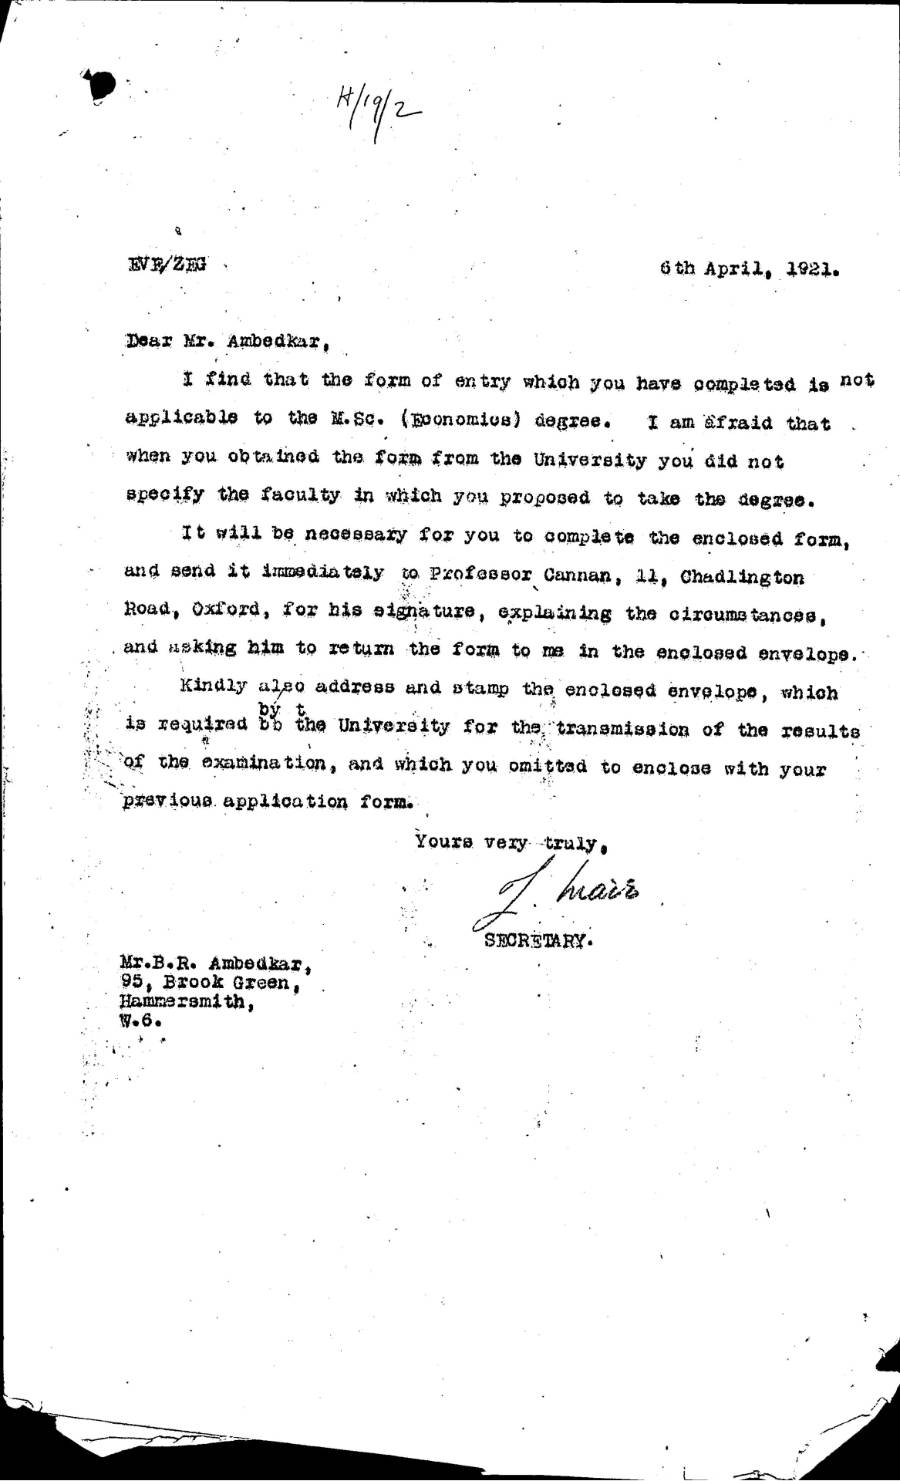 Letter from the School Secretary to Ambedkar, 1921